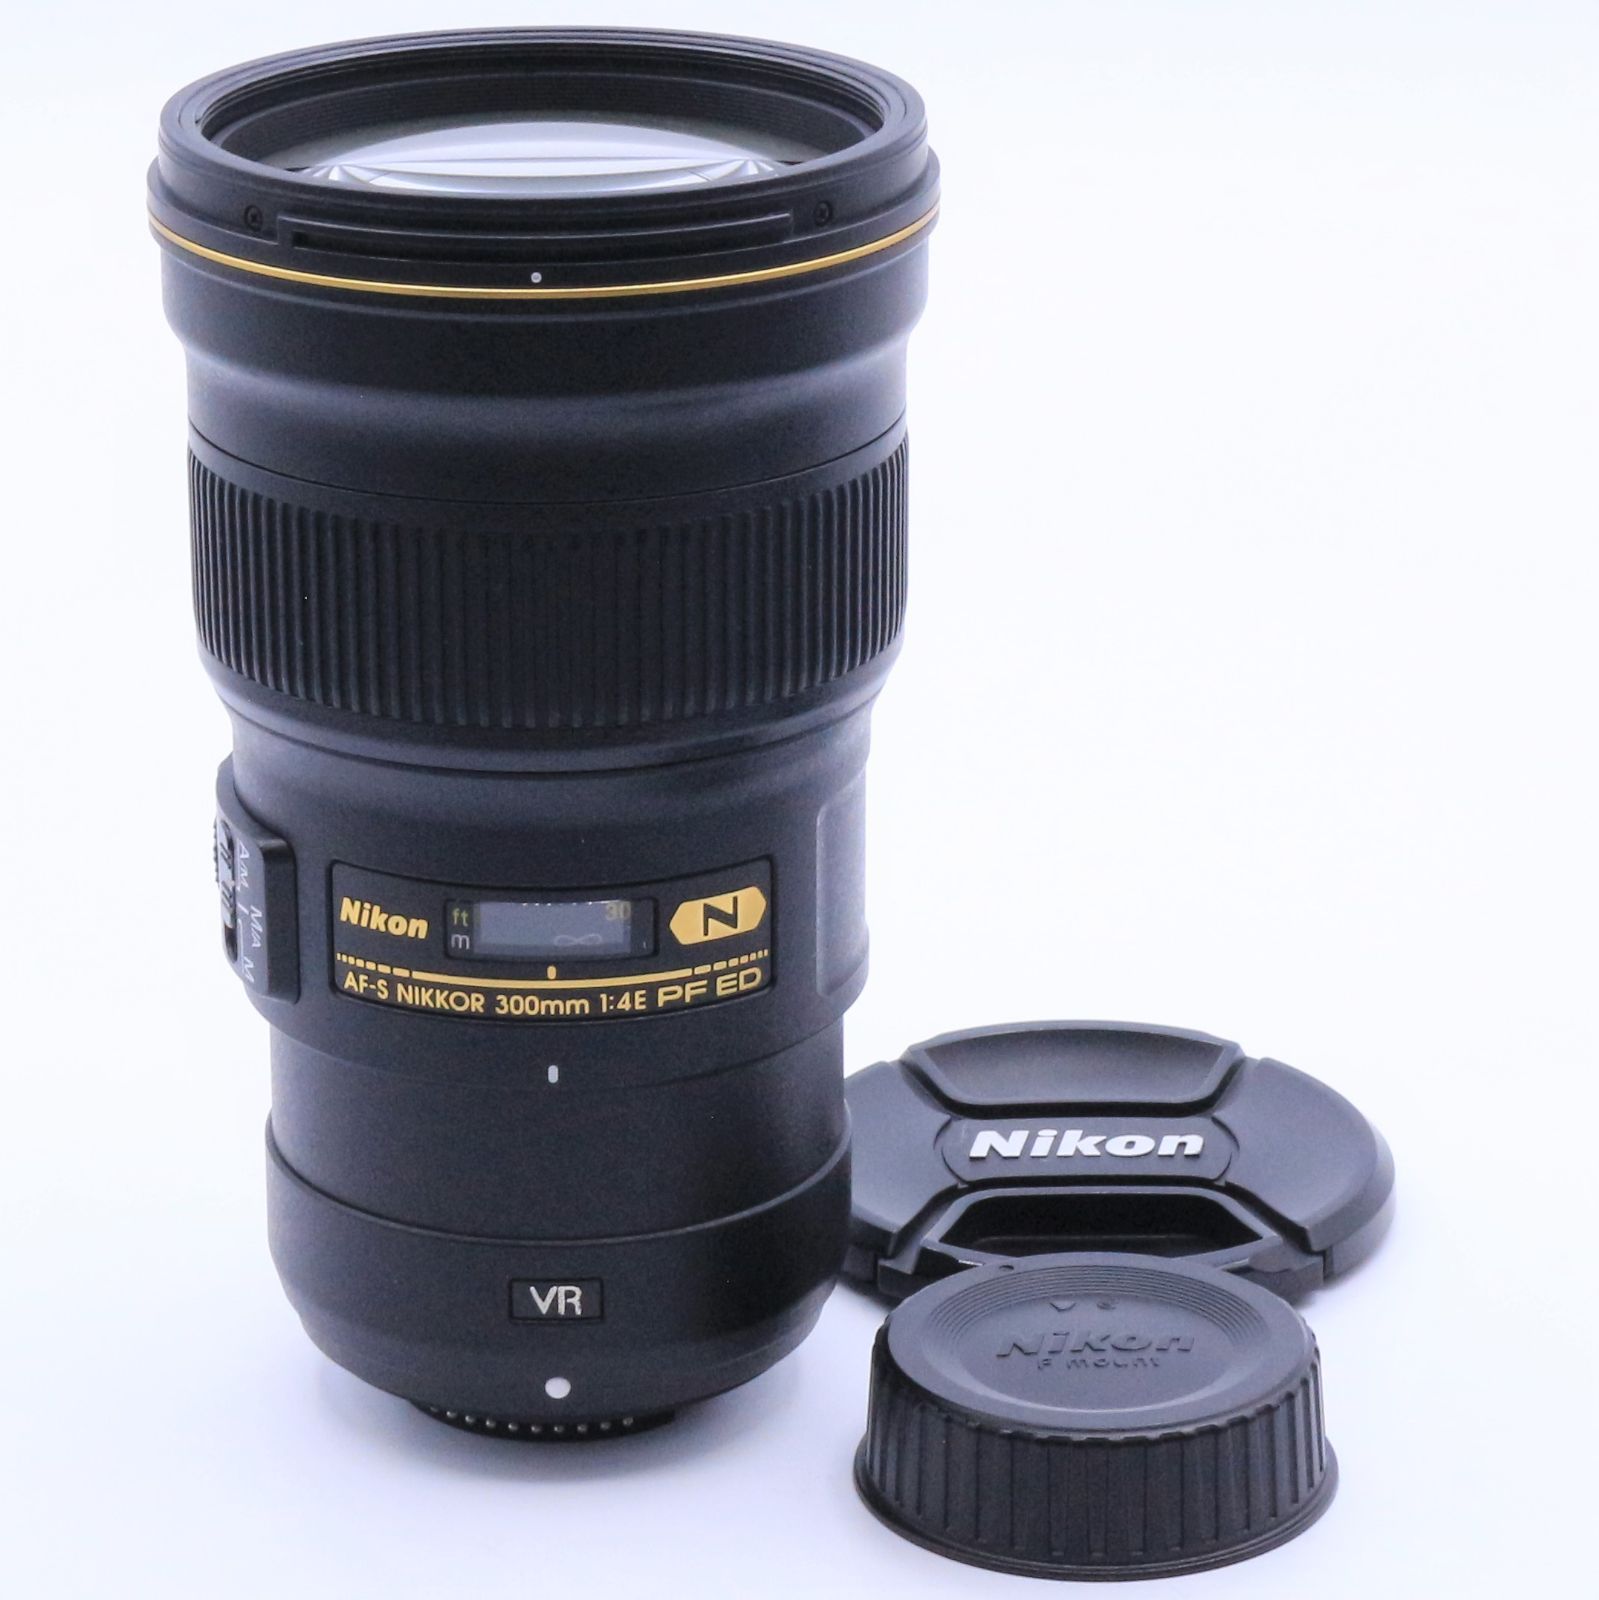 Nikon 単焦点レンズ AF-S NIKKOR 300mm f/4E PF ED VR フルサイズ対応 ...